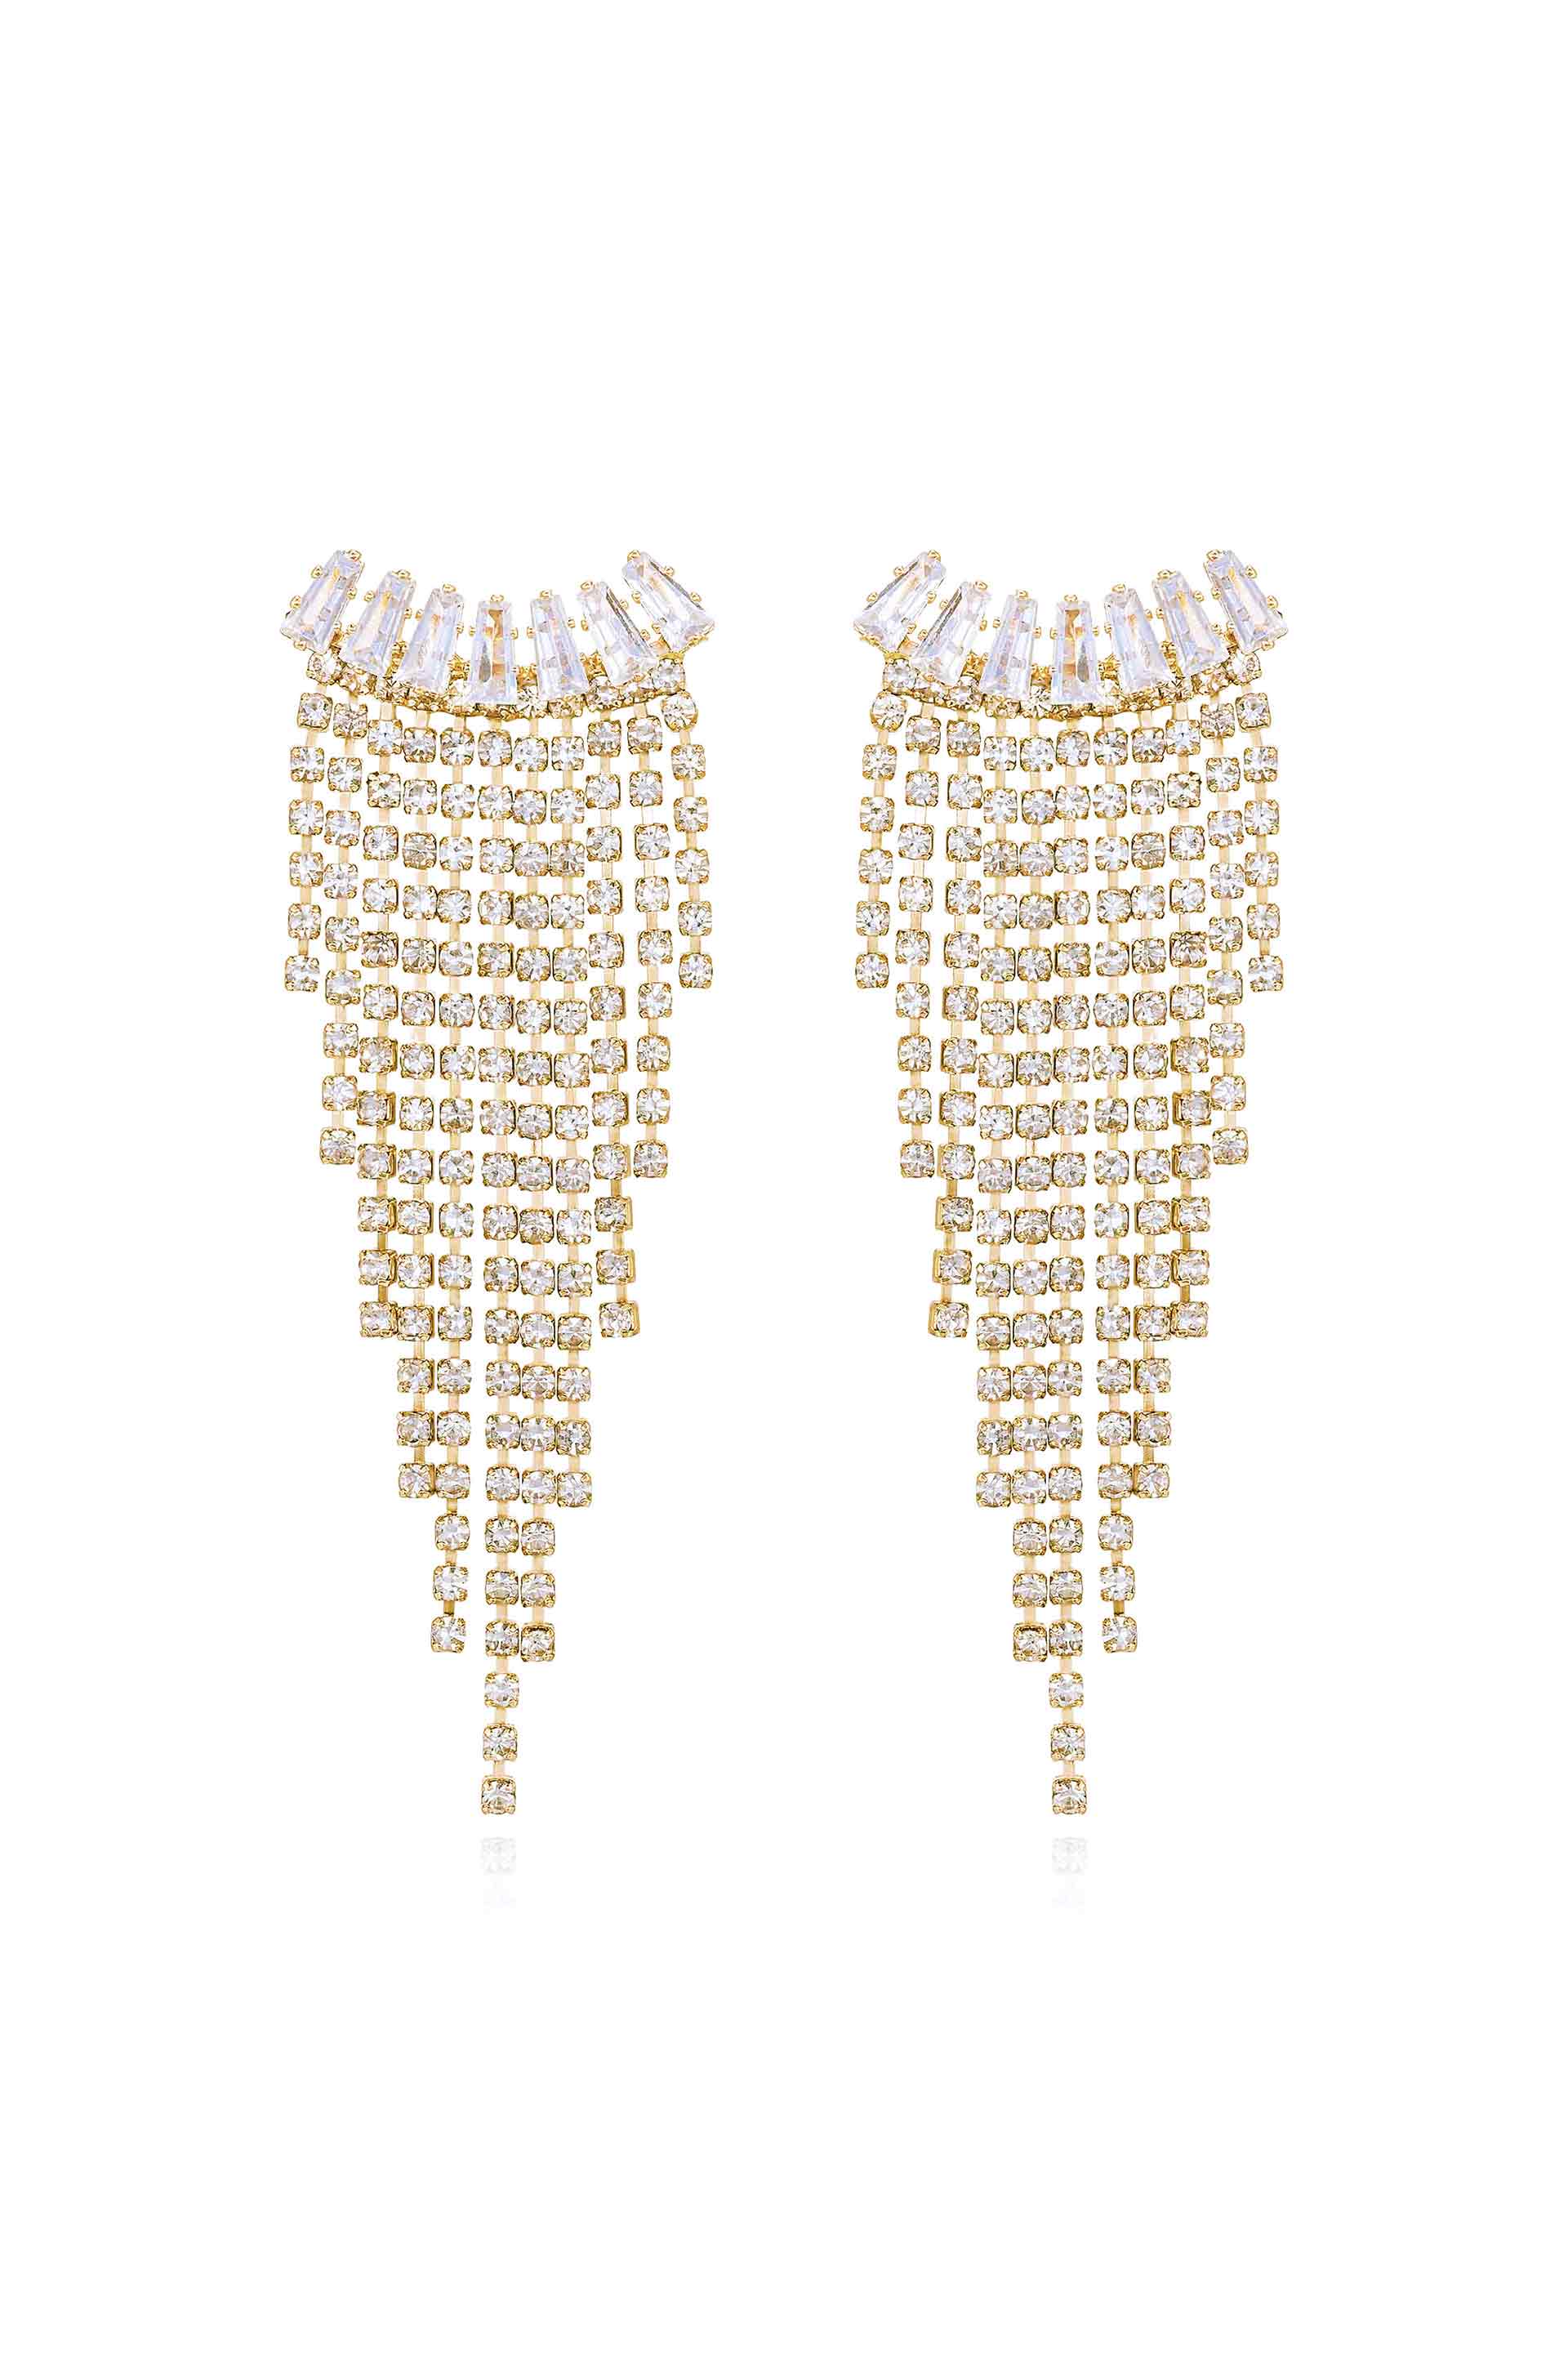 Angel Fringe Crystal Earrings - Premium Earrings from Ettika - Just $70! Shop now at Tooksie